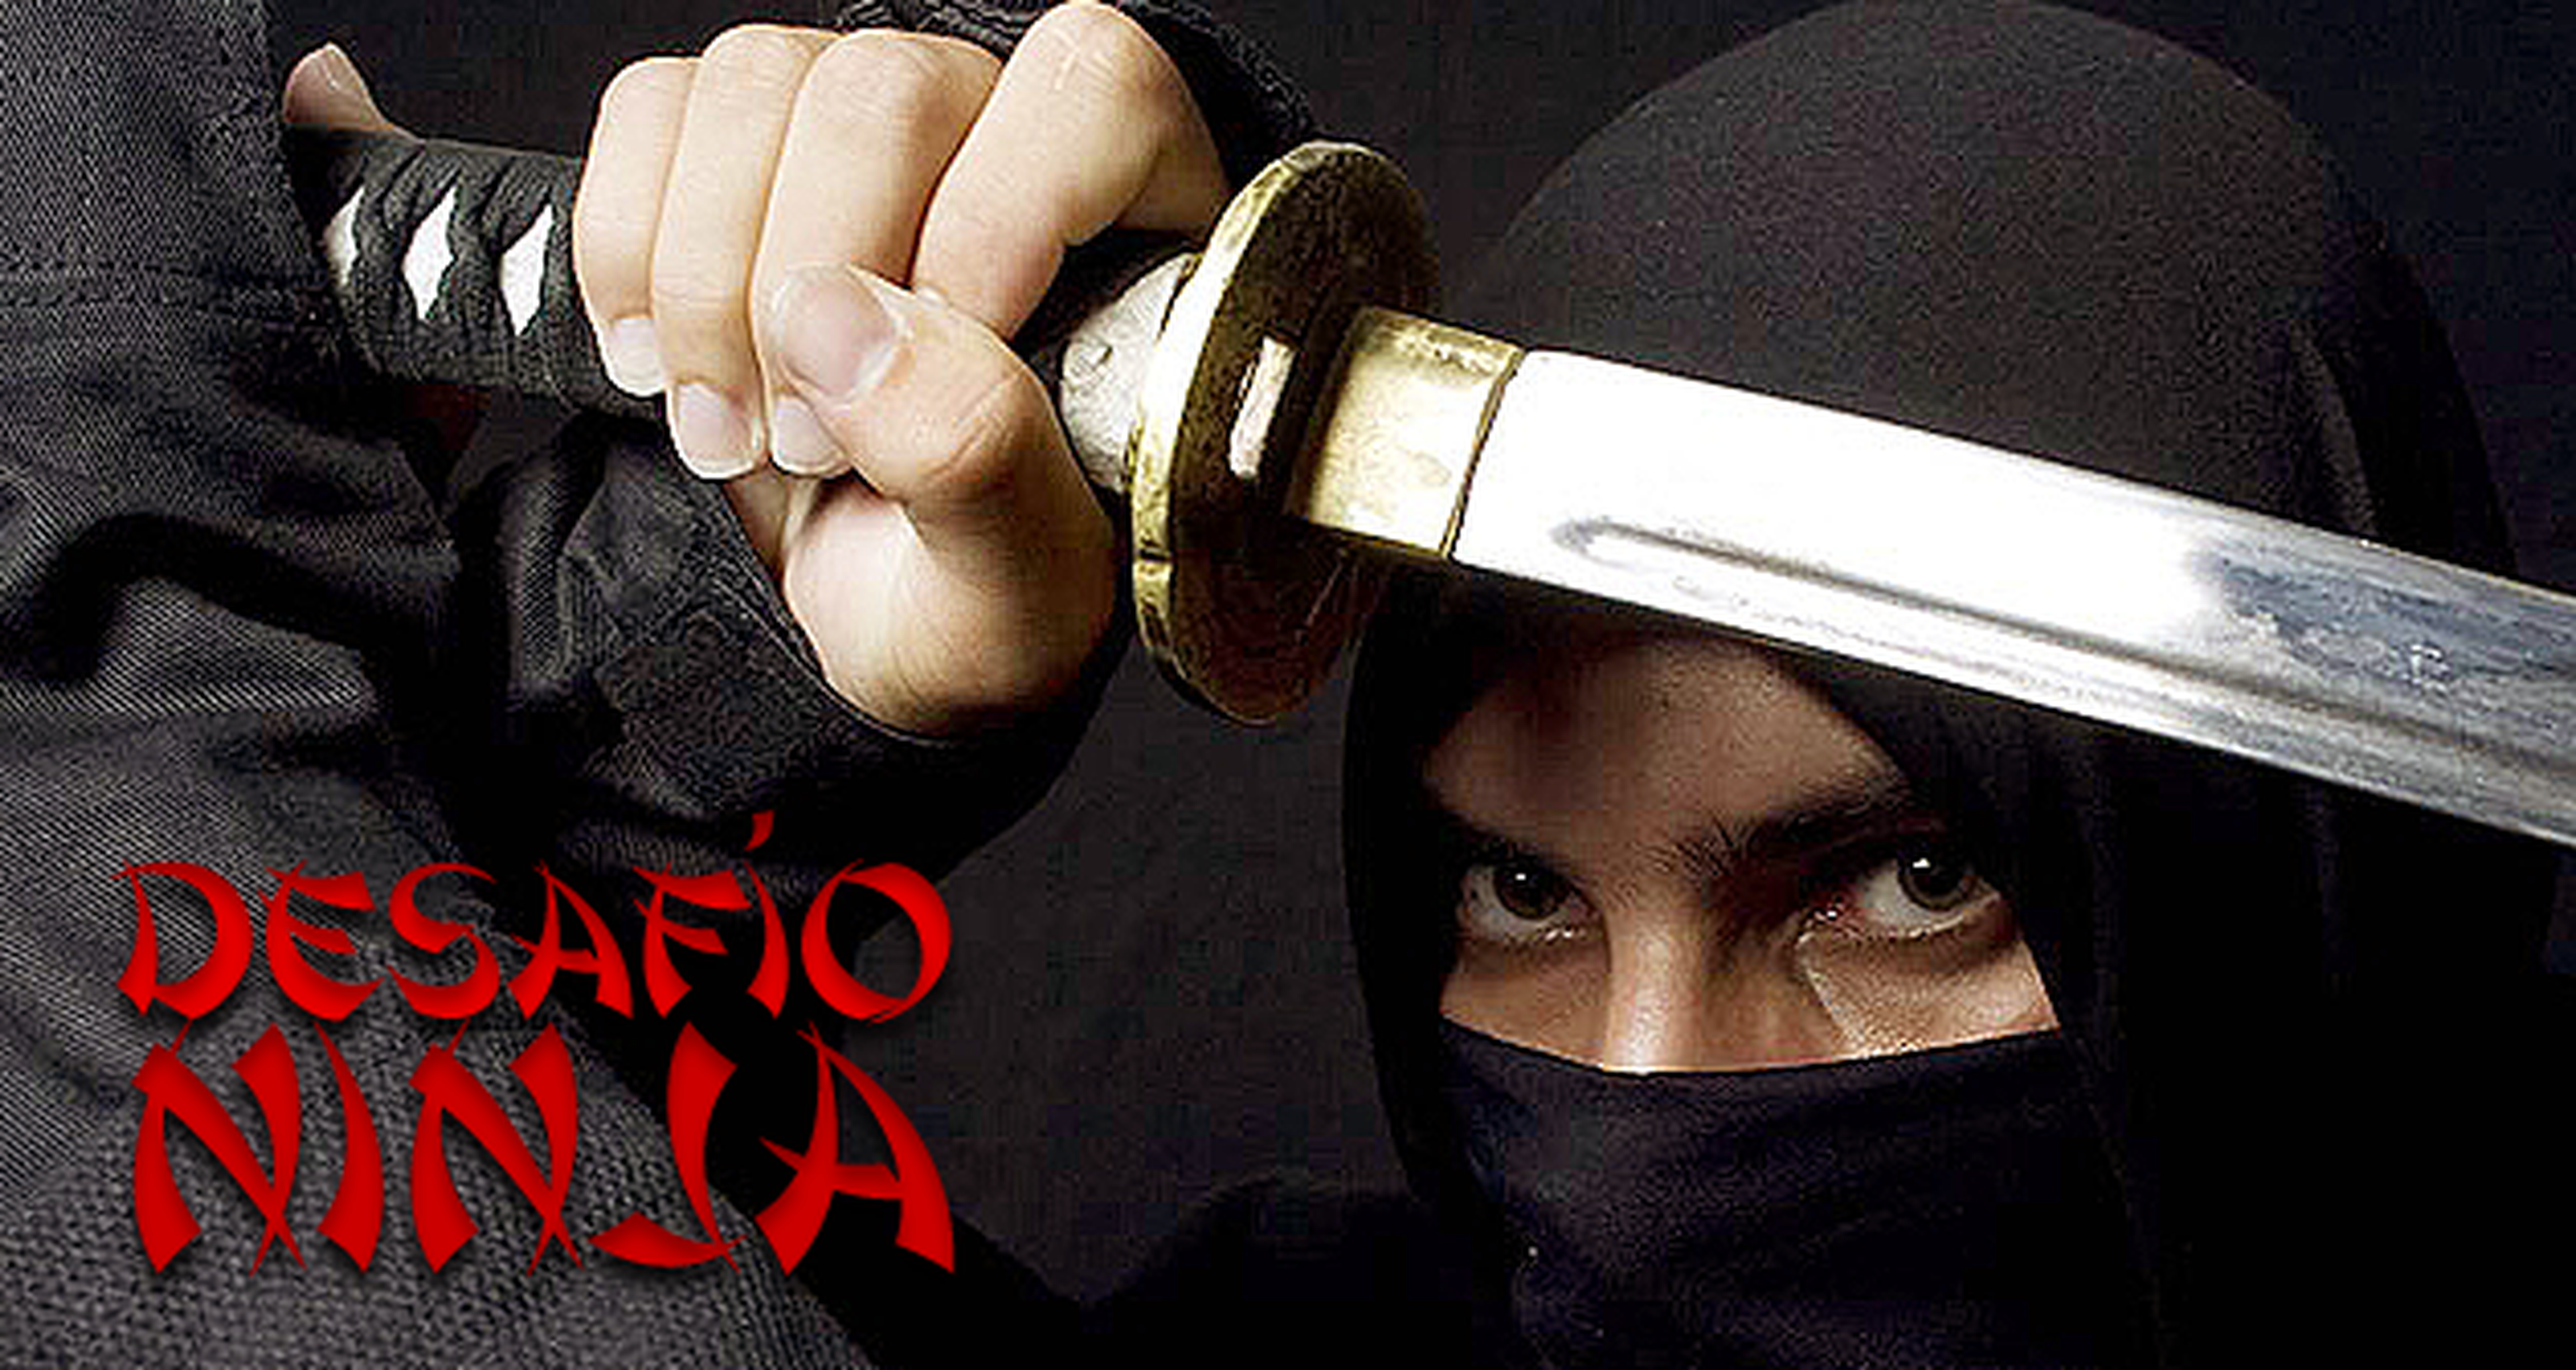 El gran desafío Ninja: elige a tu shinobi favorito